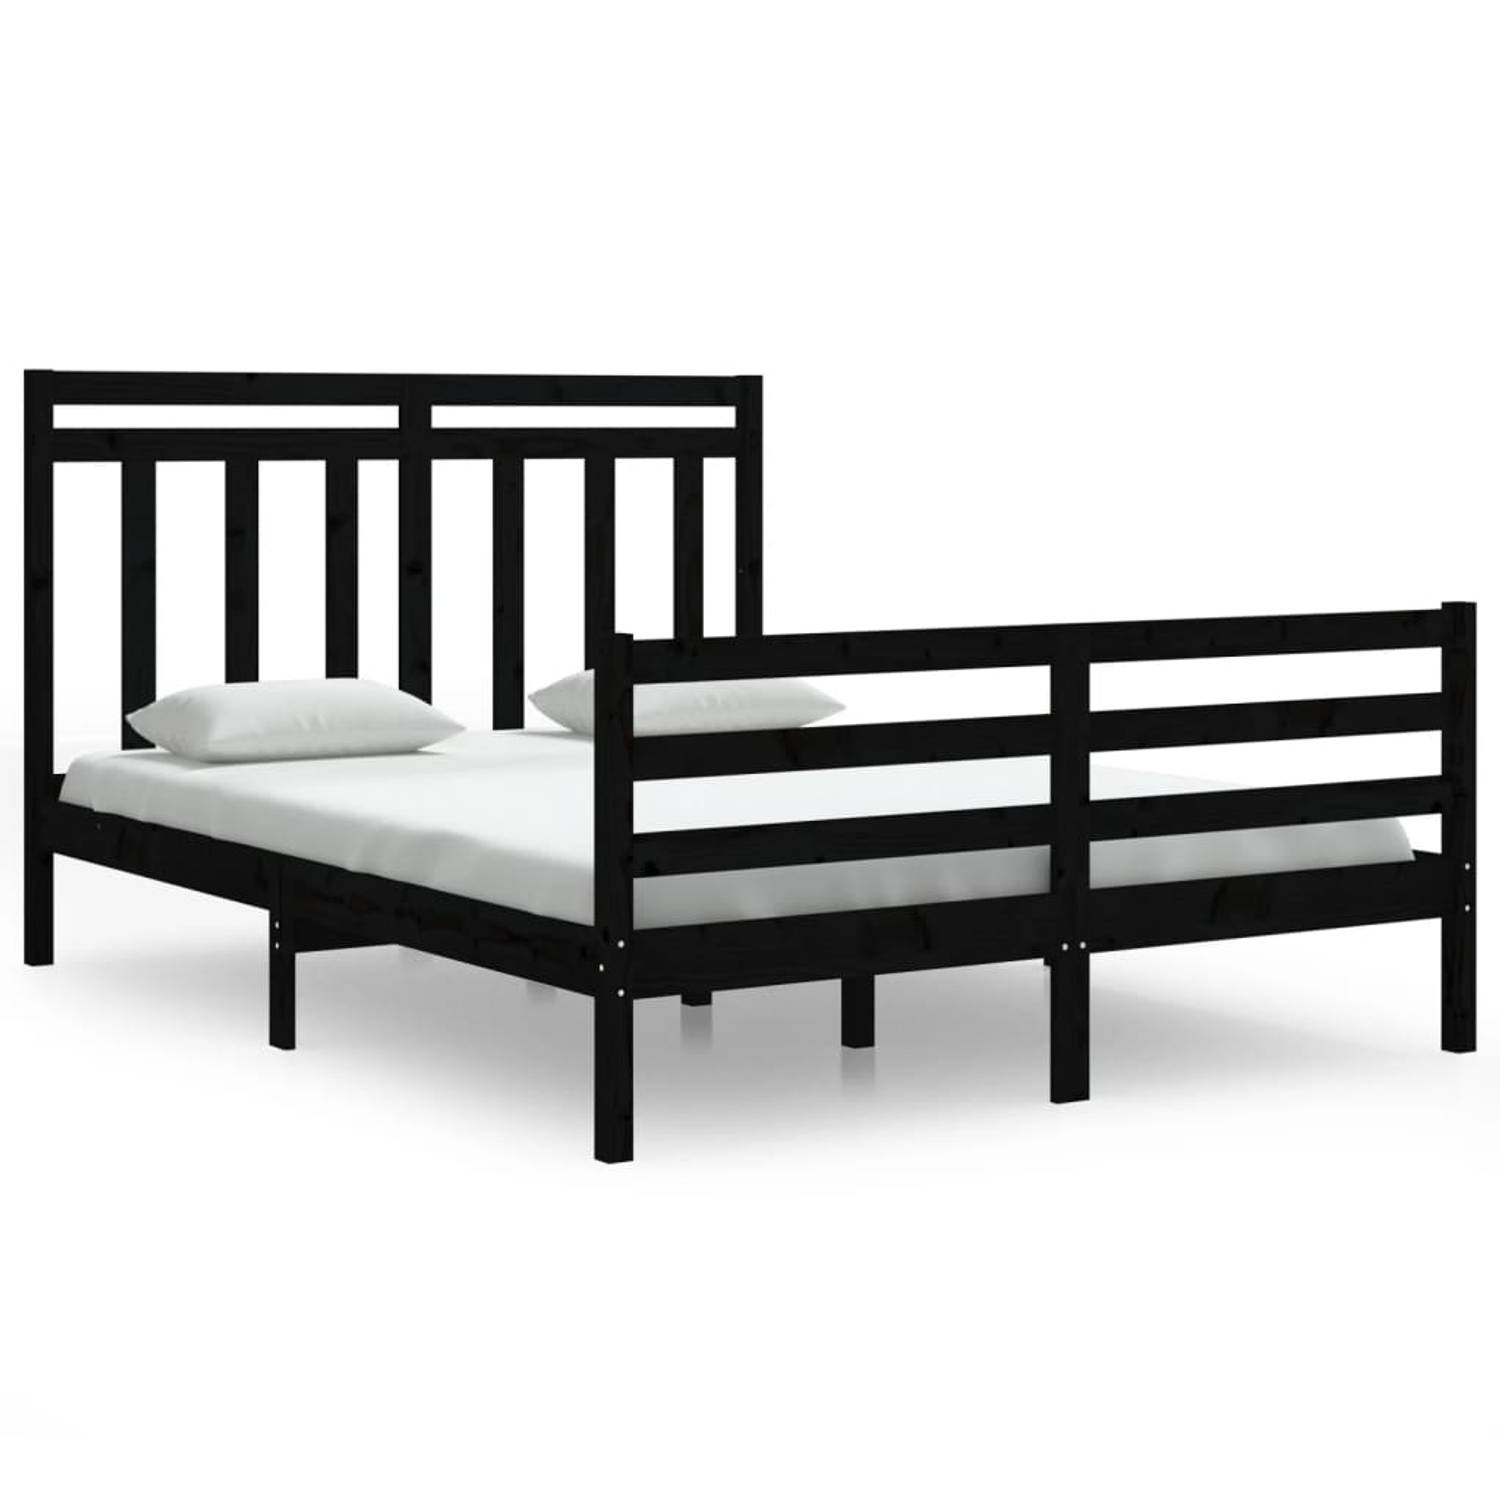 The Living Store Bedframe massief hout zwart 150x200 cm 5FT King Size - Bedframe - Bedframes - Tweepersoonsbed - Bed - Bedombouw - Dubbel Bed - Frame - Bed Frame - Ledikant - Houte